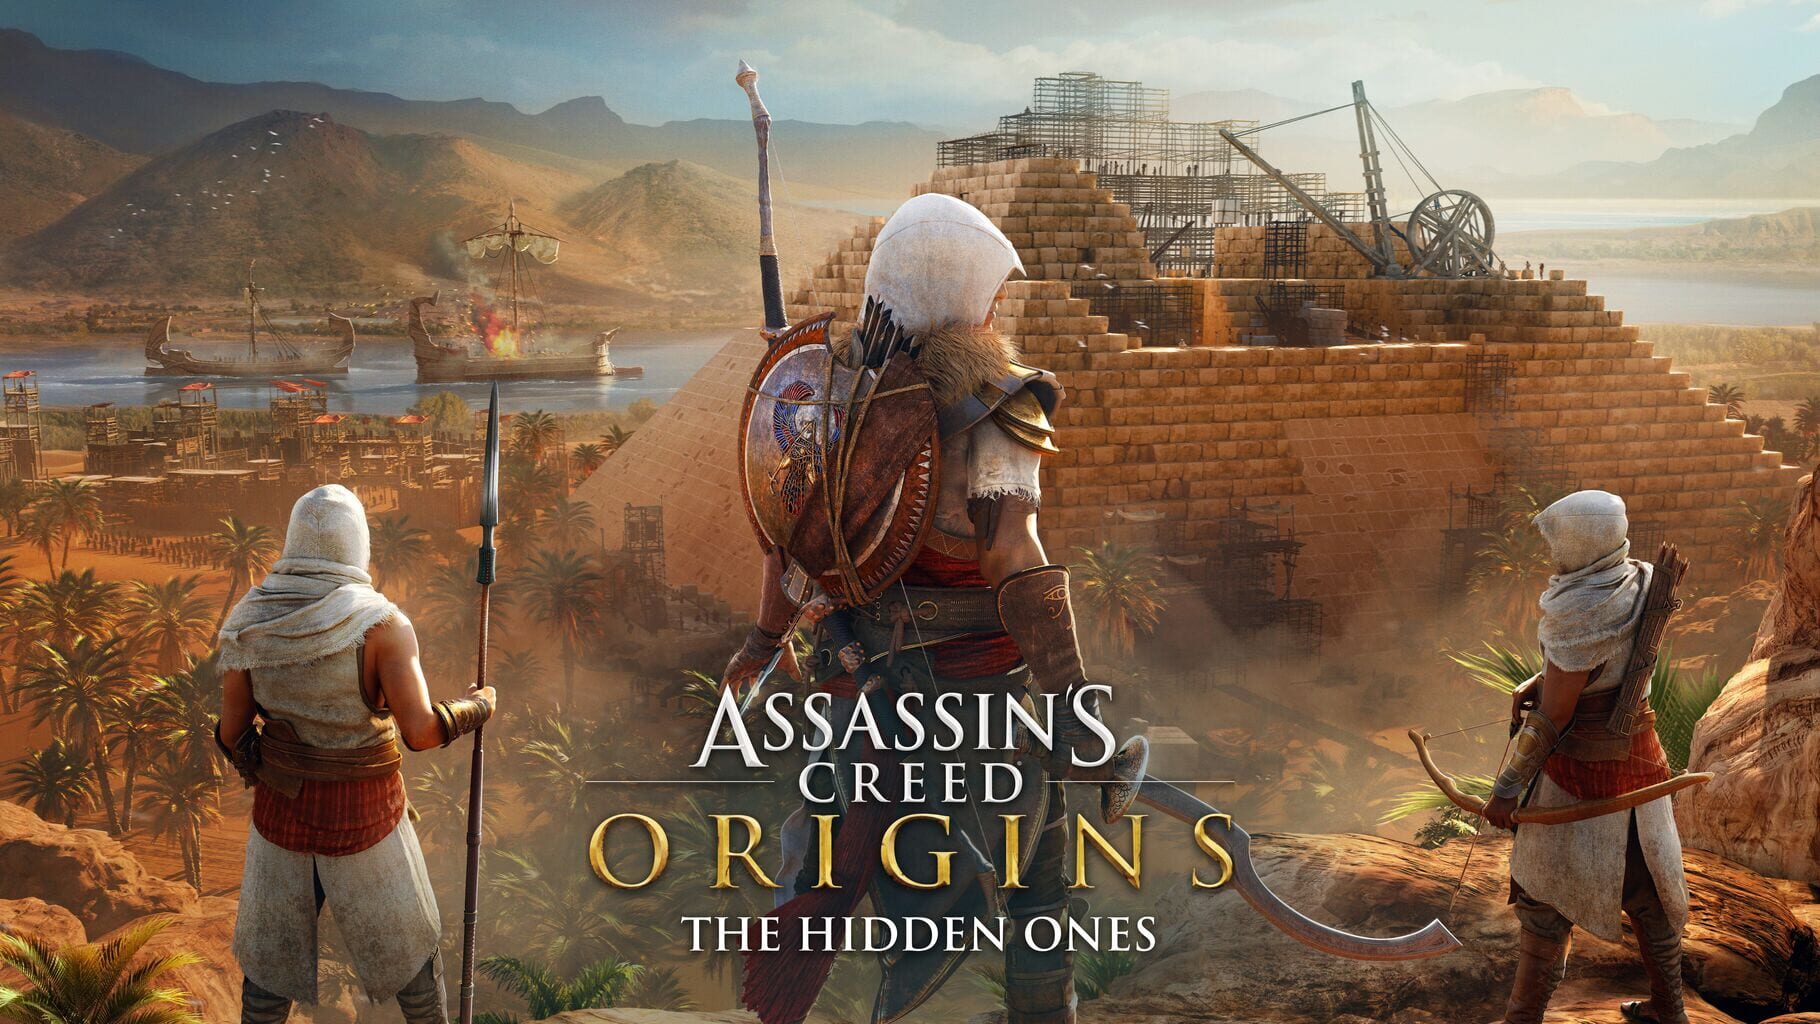 Arte - Assassin's Creed Origins: The Hidden Ones